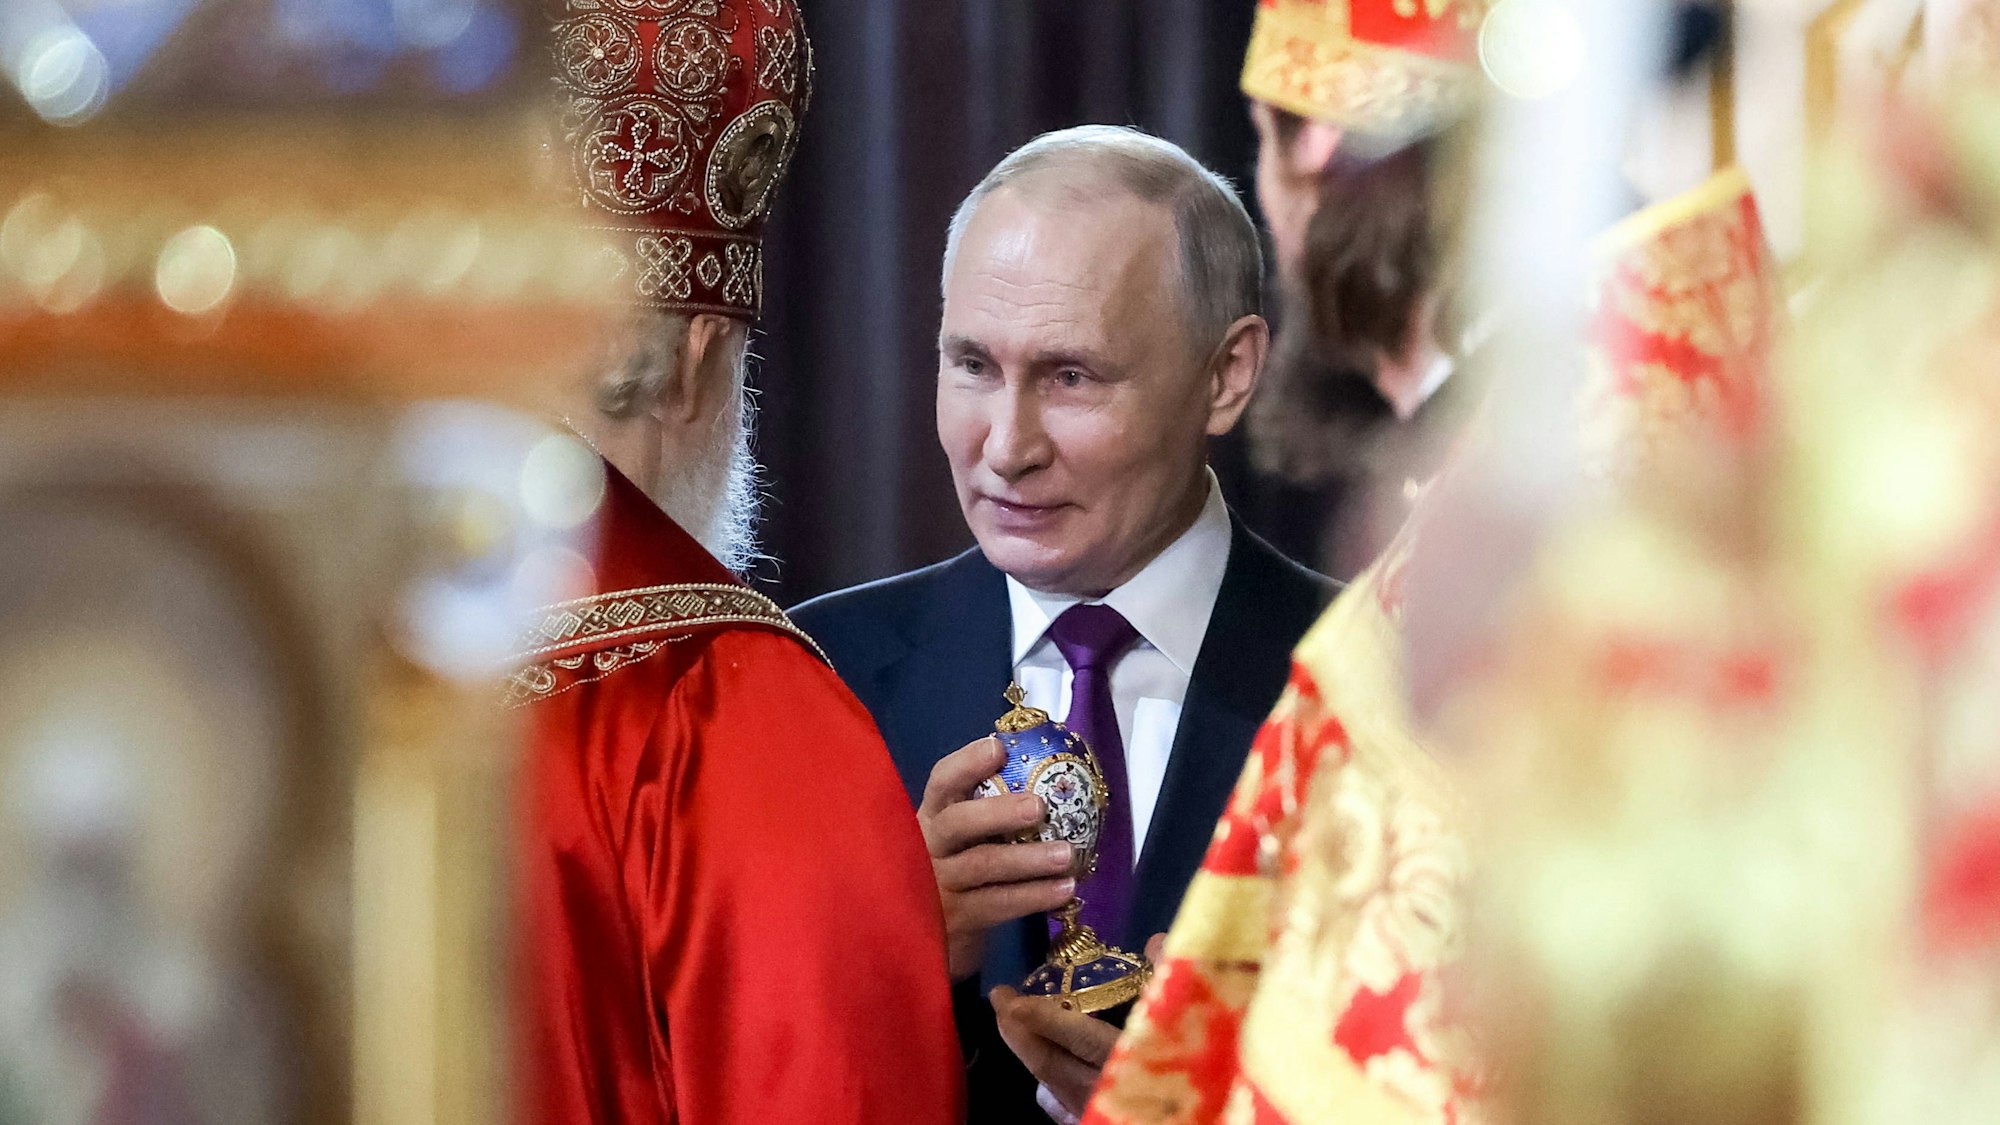 Der russische Präsident Wladimir Putin im Gespräch mit dem Oberhaupt der russisch-orthodoxen Kirche, Patriarch Kirill. Beide sehen Russland in einem „heiligen Krieg“. (Archivbild)